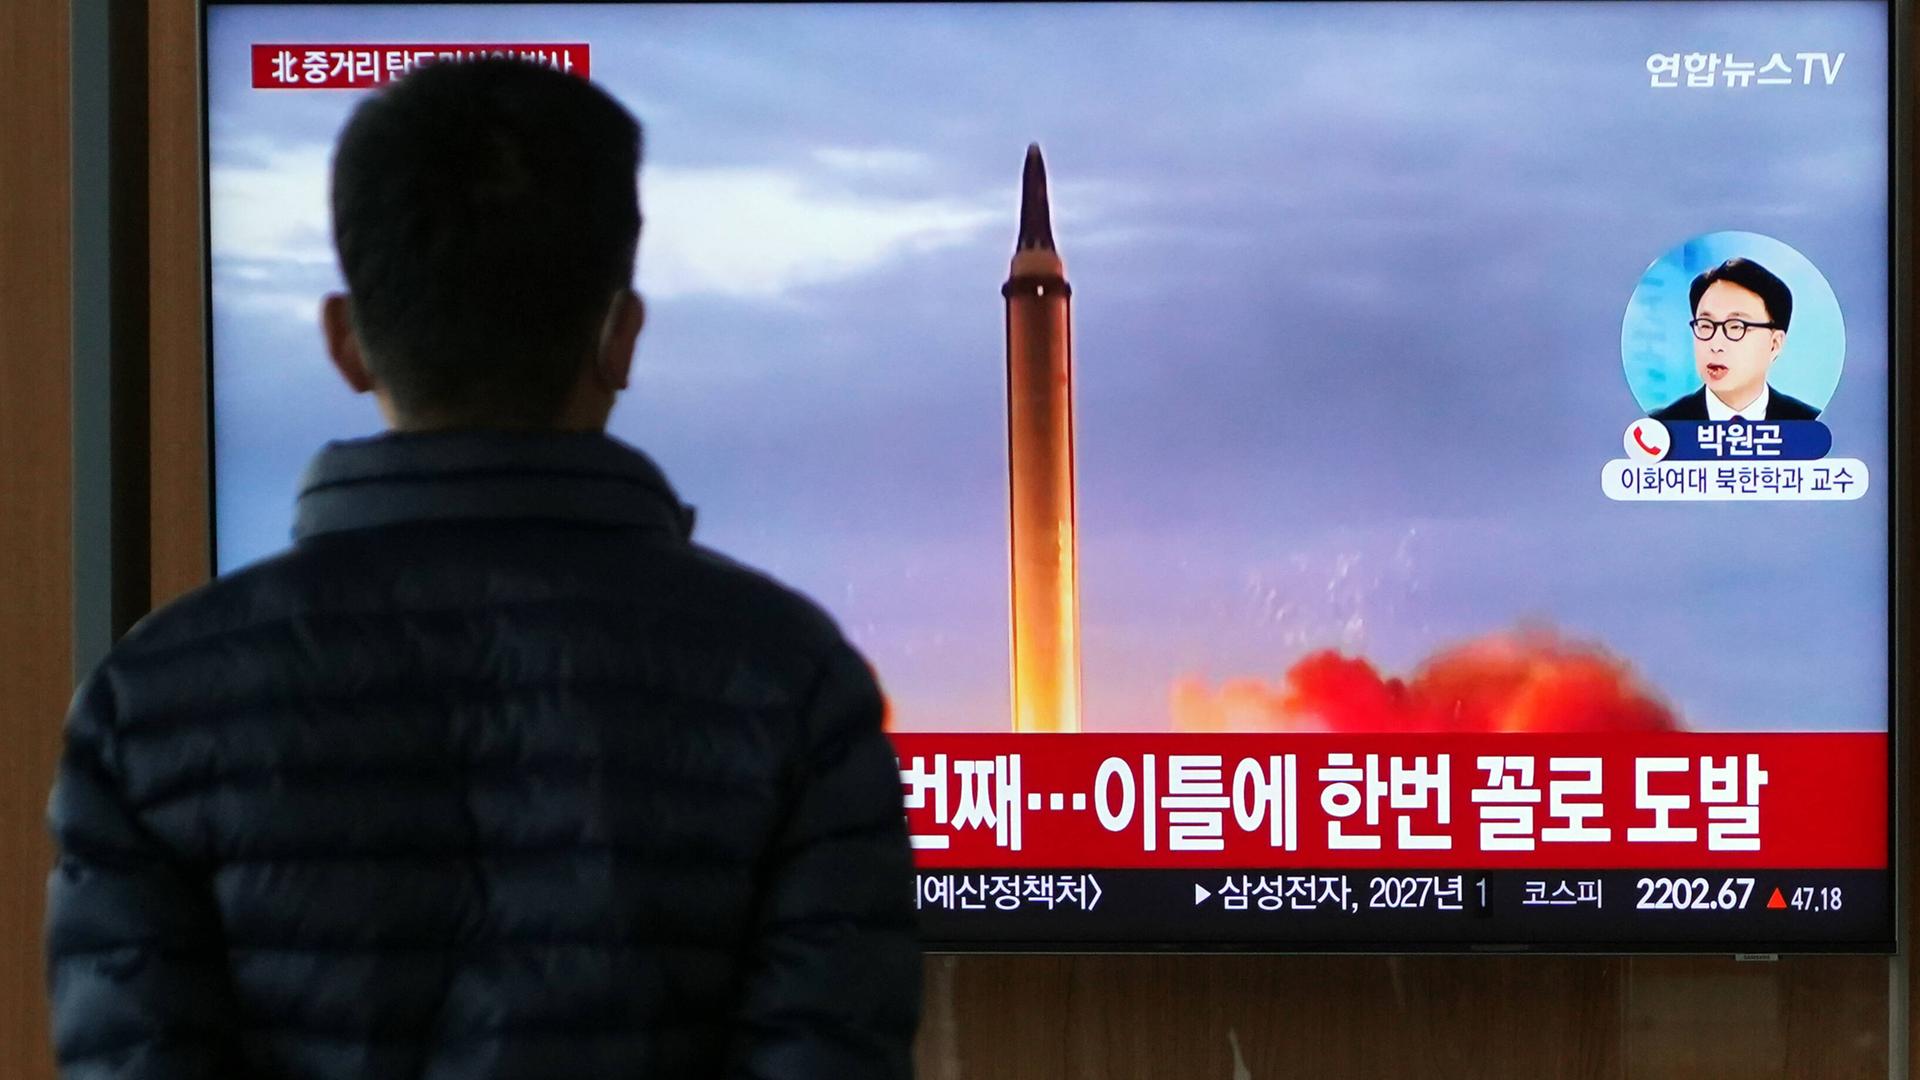 Ein Mann betrachtet auf einem Bildschirm Aufnahmen von dem neusten Raketentest Norkoreas am 4. Oktober 2022.  